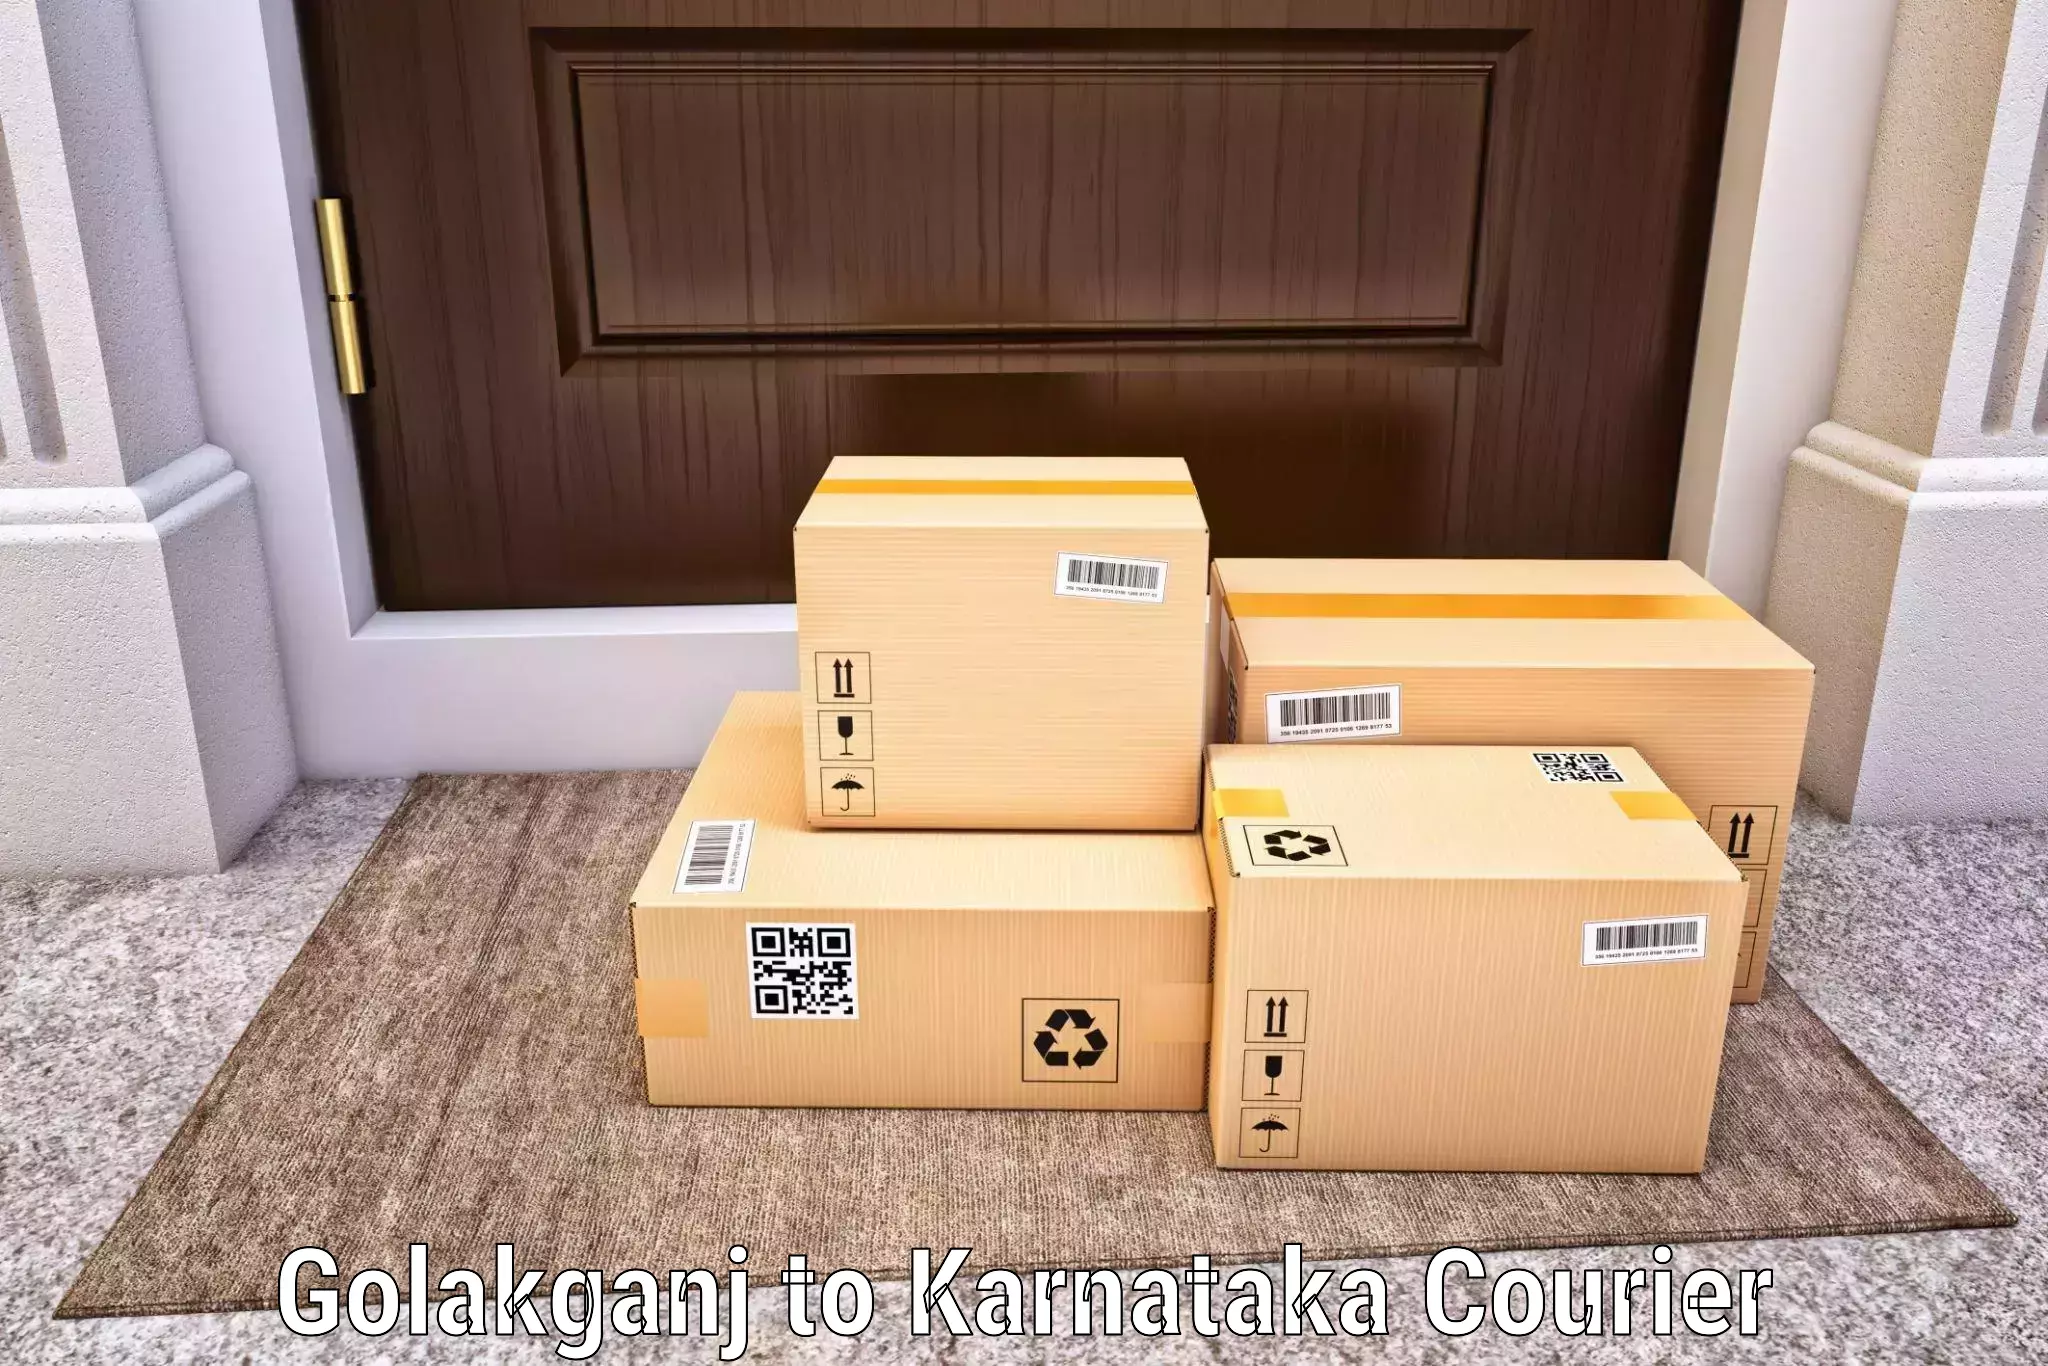 Enhanced delivery experience Golakganj to Yenepoya Mangalore